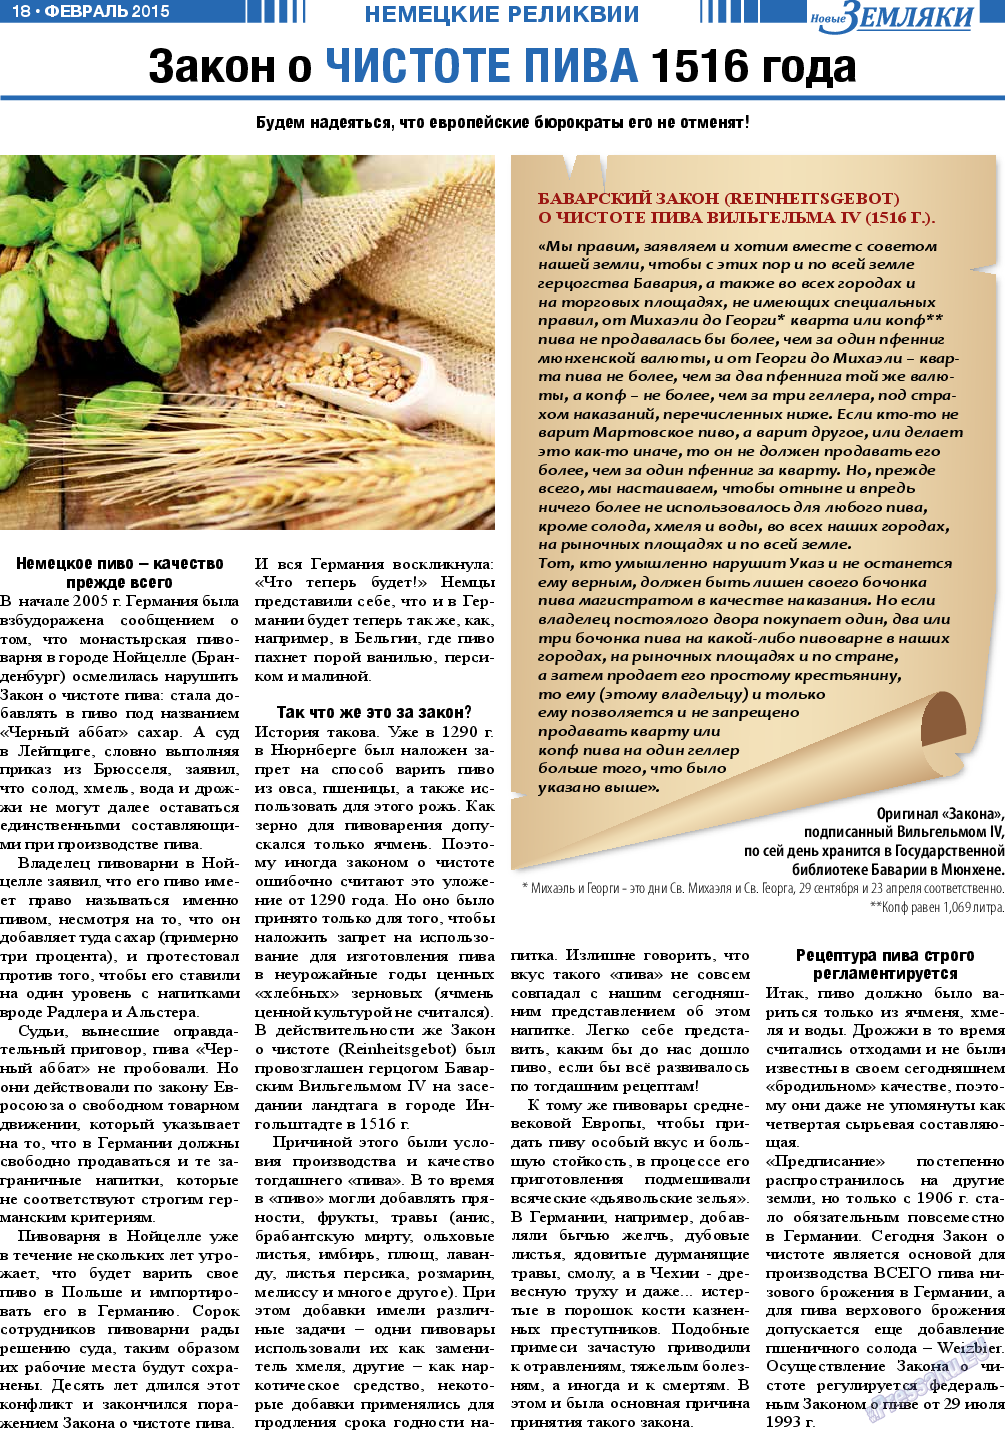 Новые Земляки (газета). 2015 год, номер 2, стр. 18